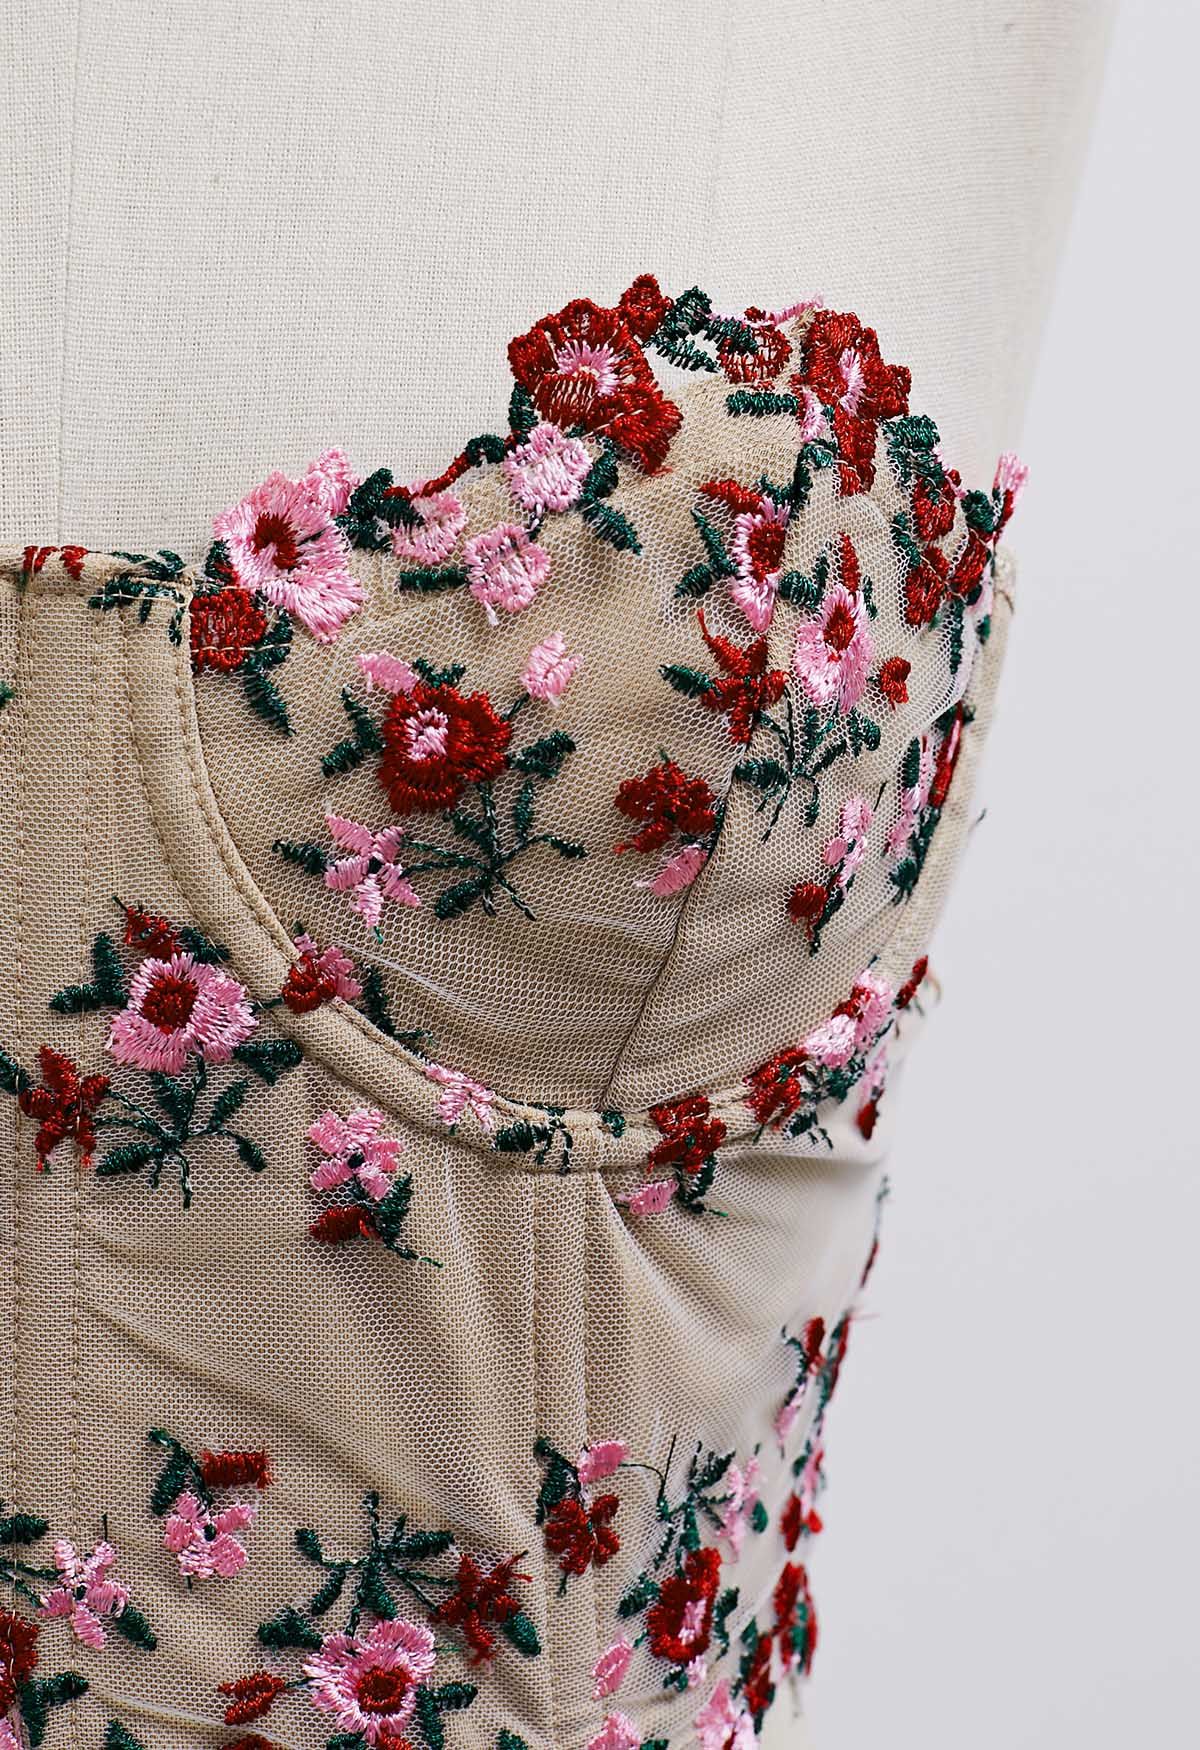 Haut bustier corset brodé de fleurs délicates